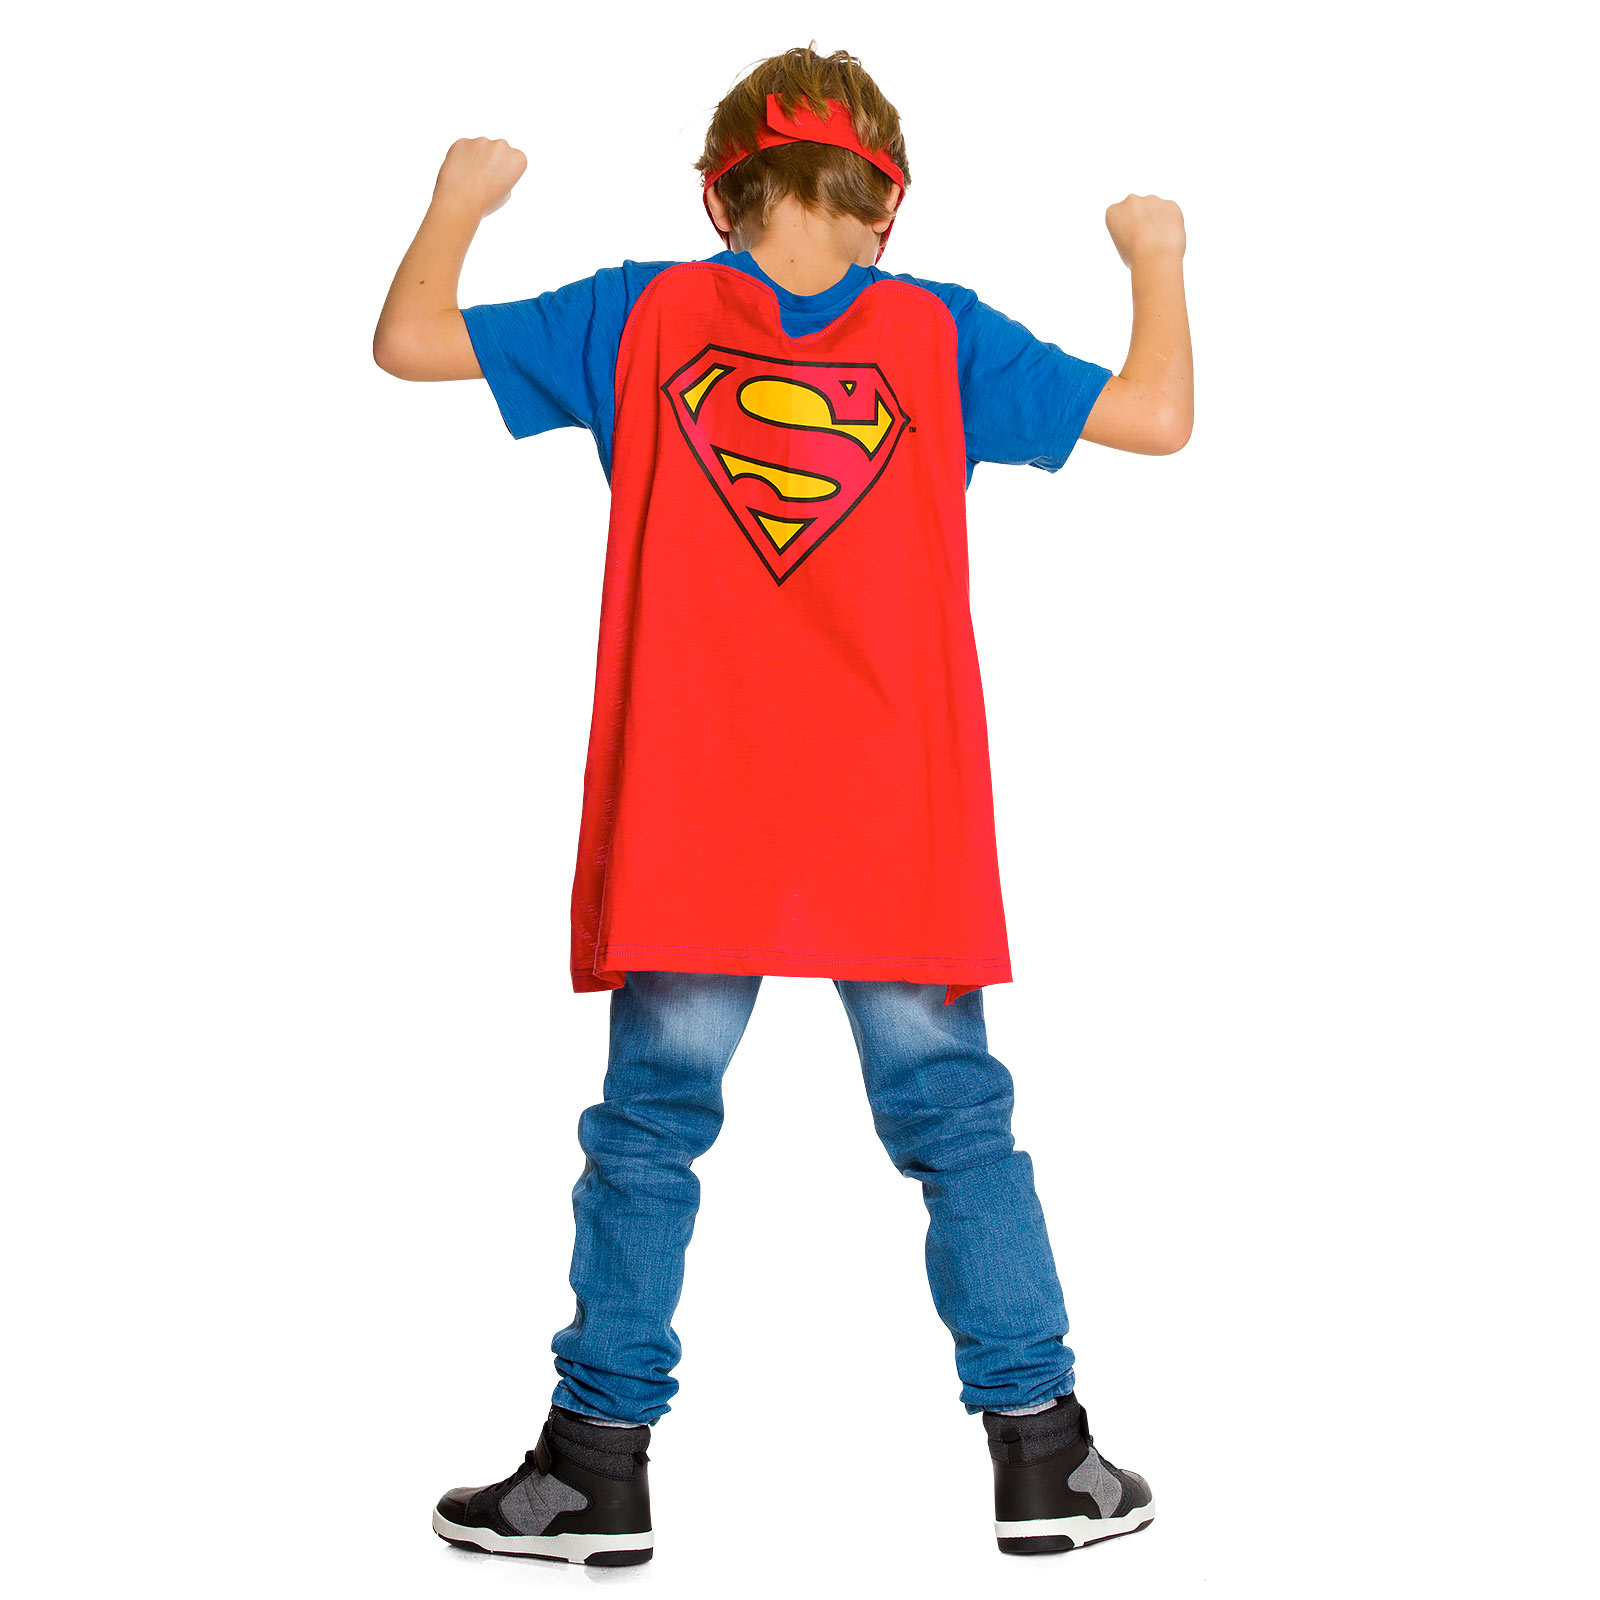 Superman - T-shirt pour enfants avec cape et masque pour les yeux